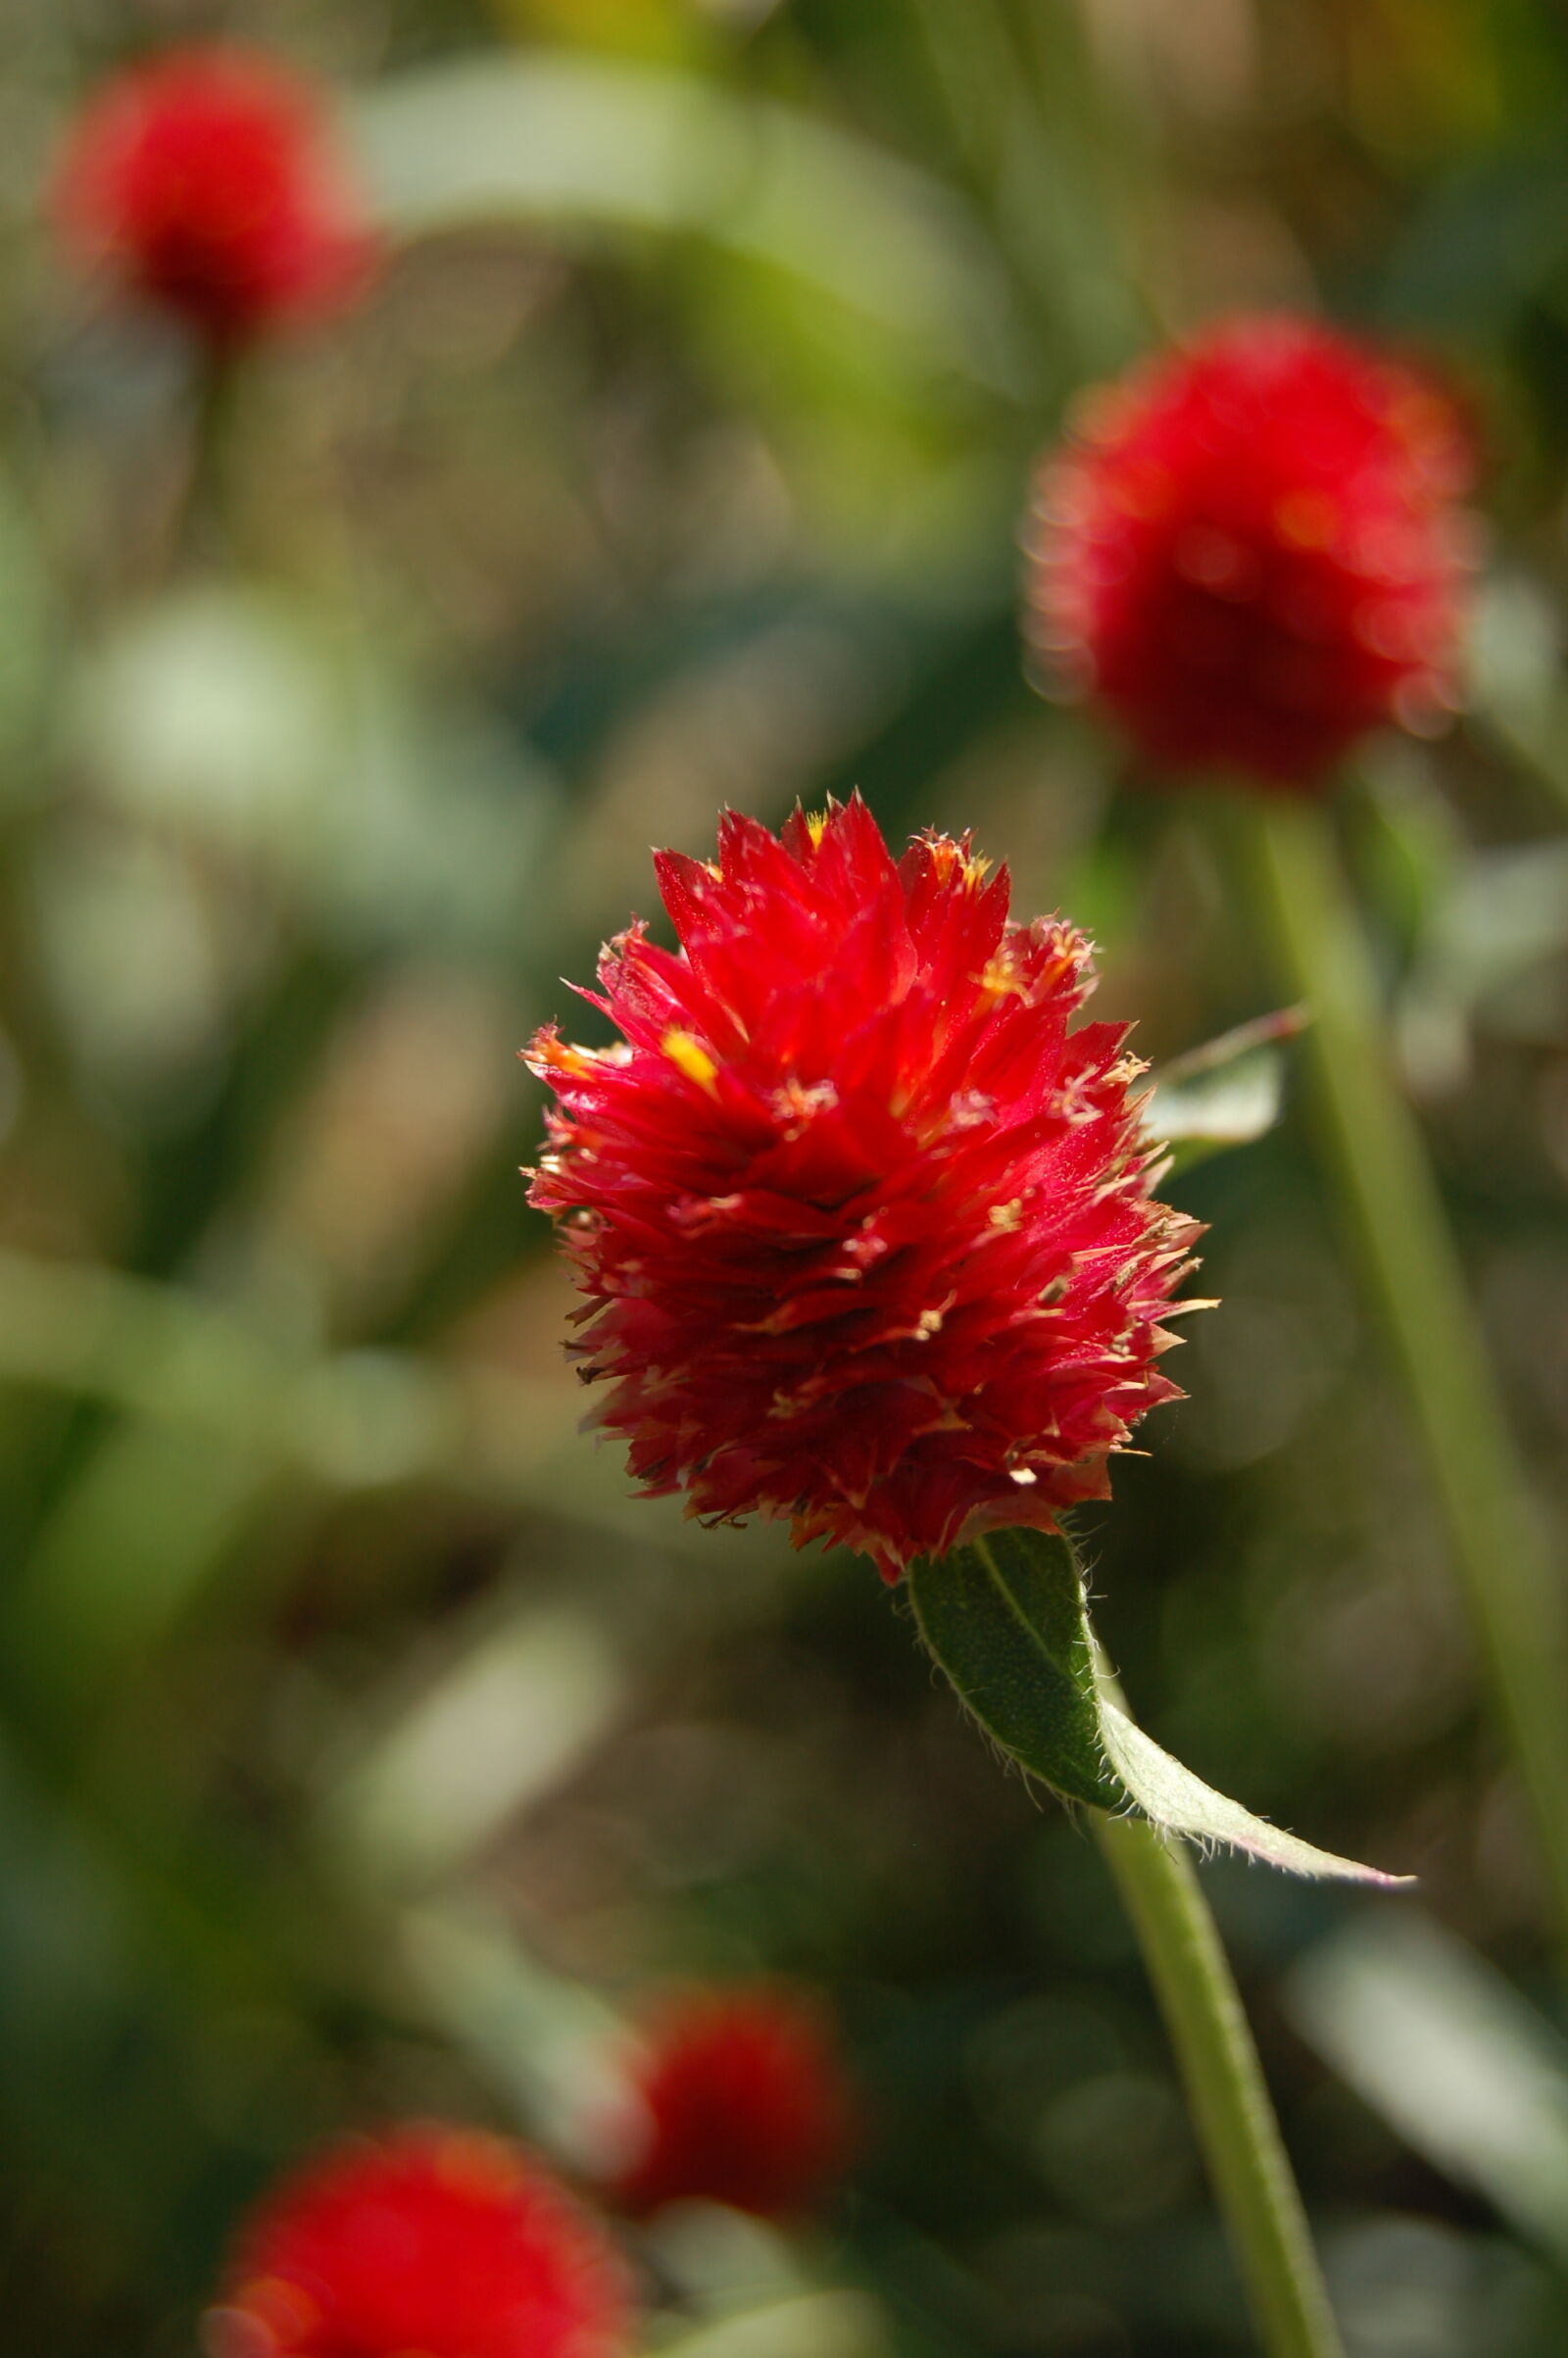 AF-S DX Zoom-Nikkor 18-55mm f/3.5-5.6G ED sample photo. Flower, red, red, flower photography